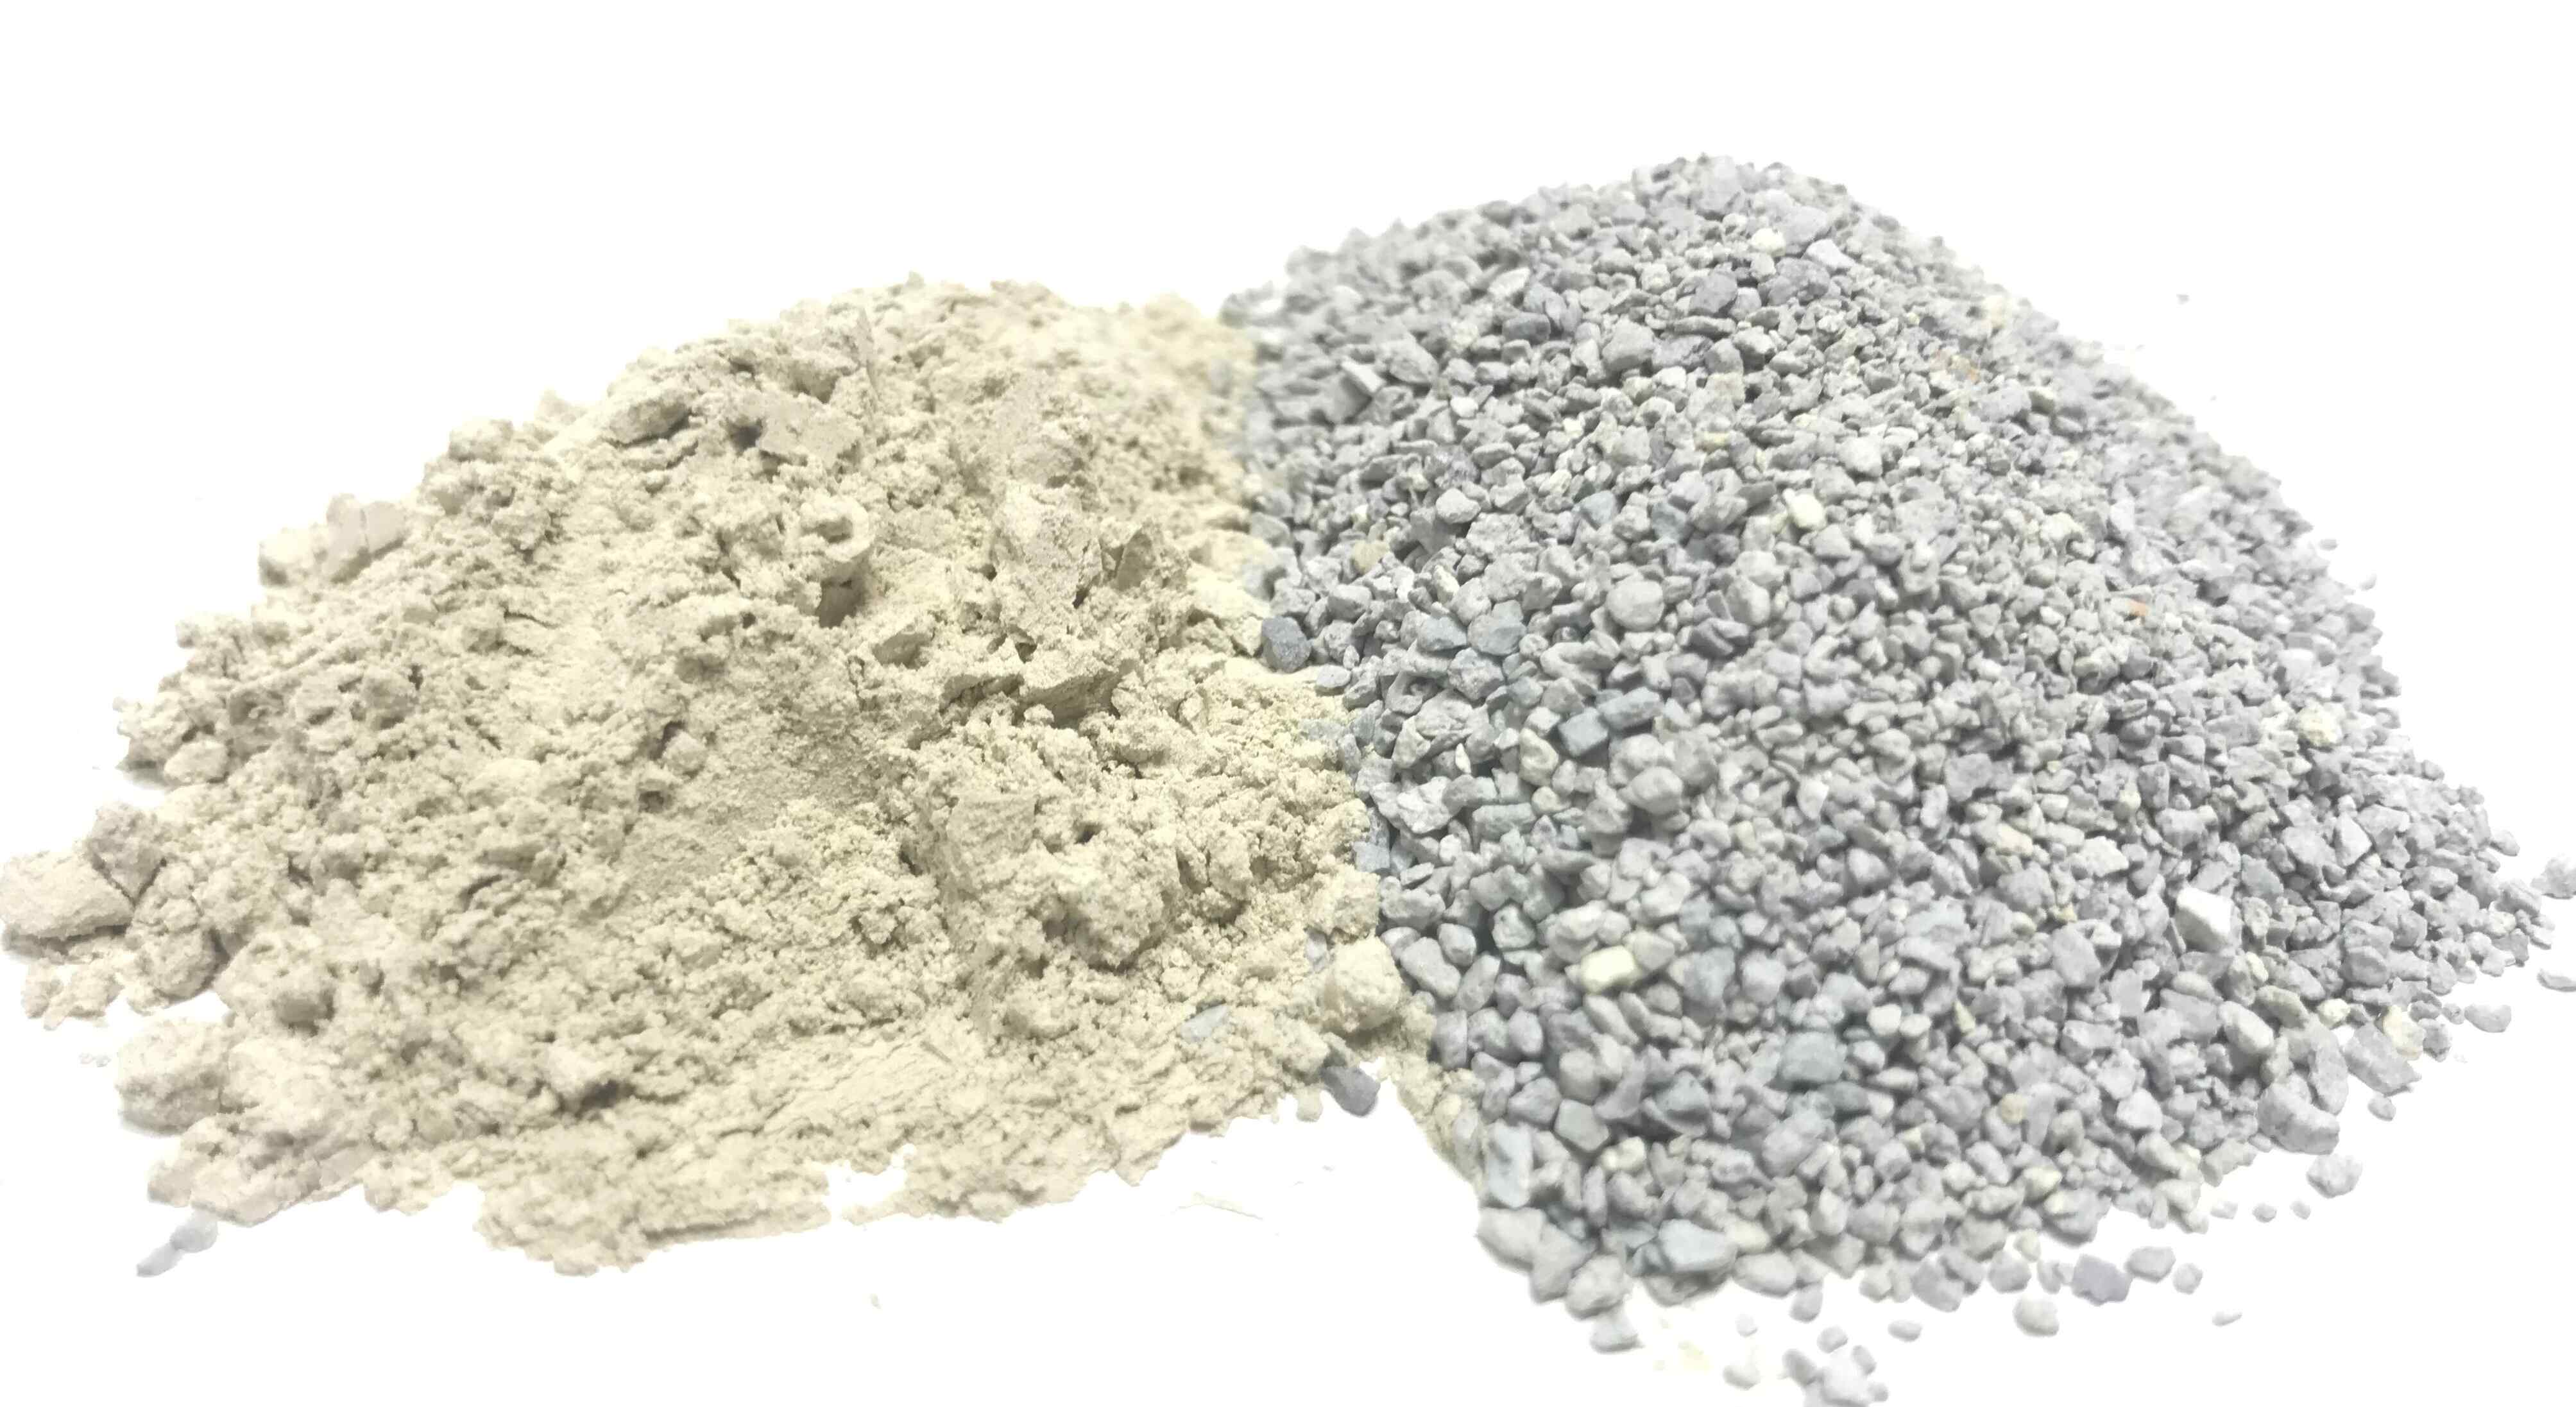 Powder for Drilling vs. Granular for Litter